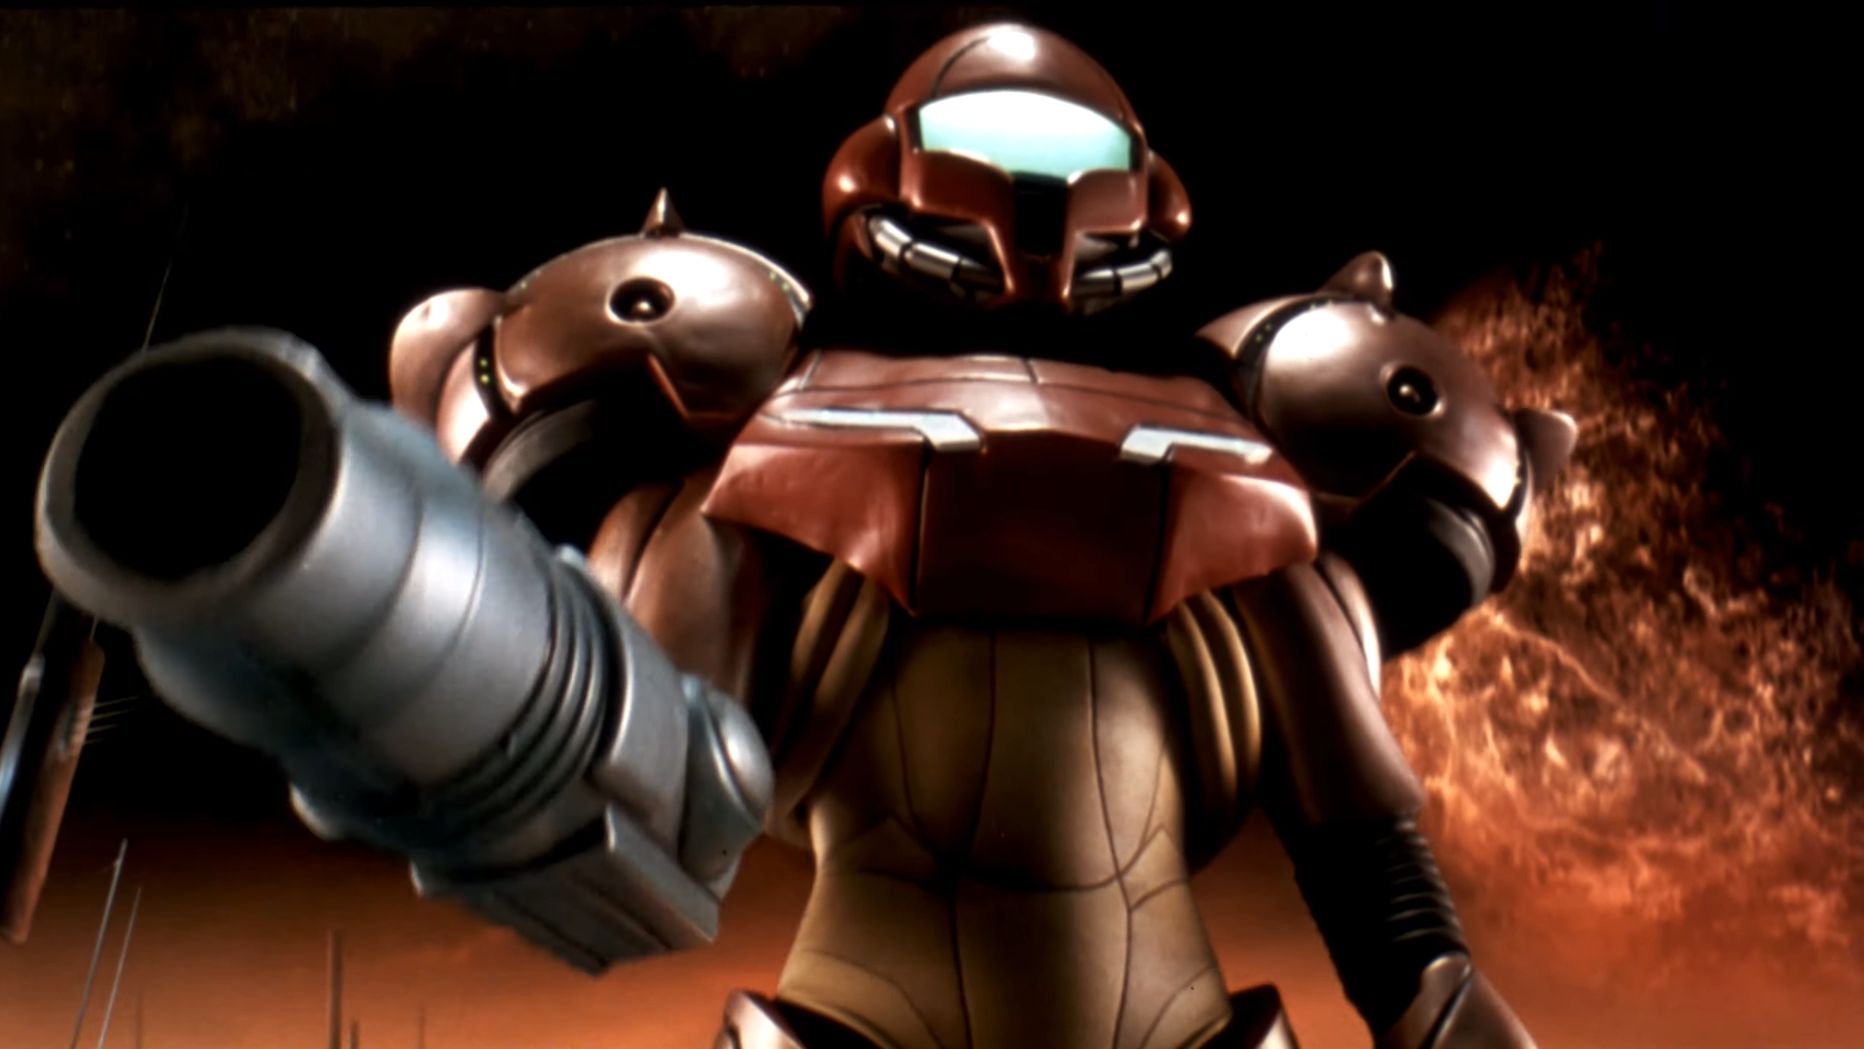 Metroid Prime's original liveaction trailer looks amazing in 4K